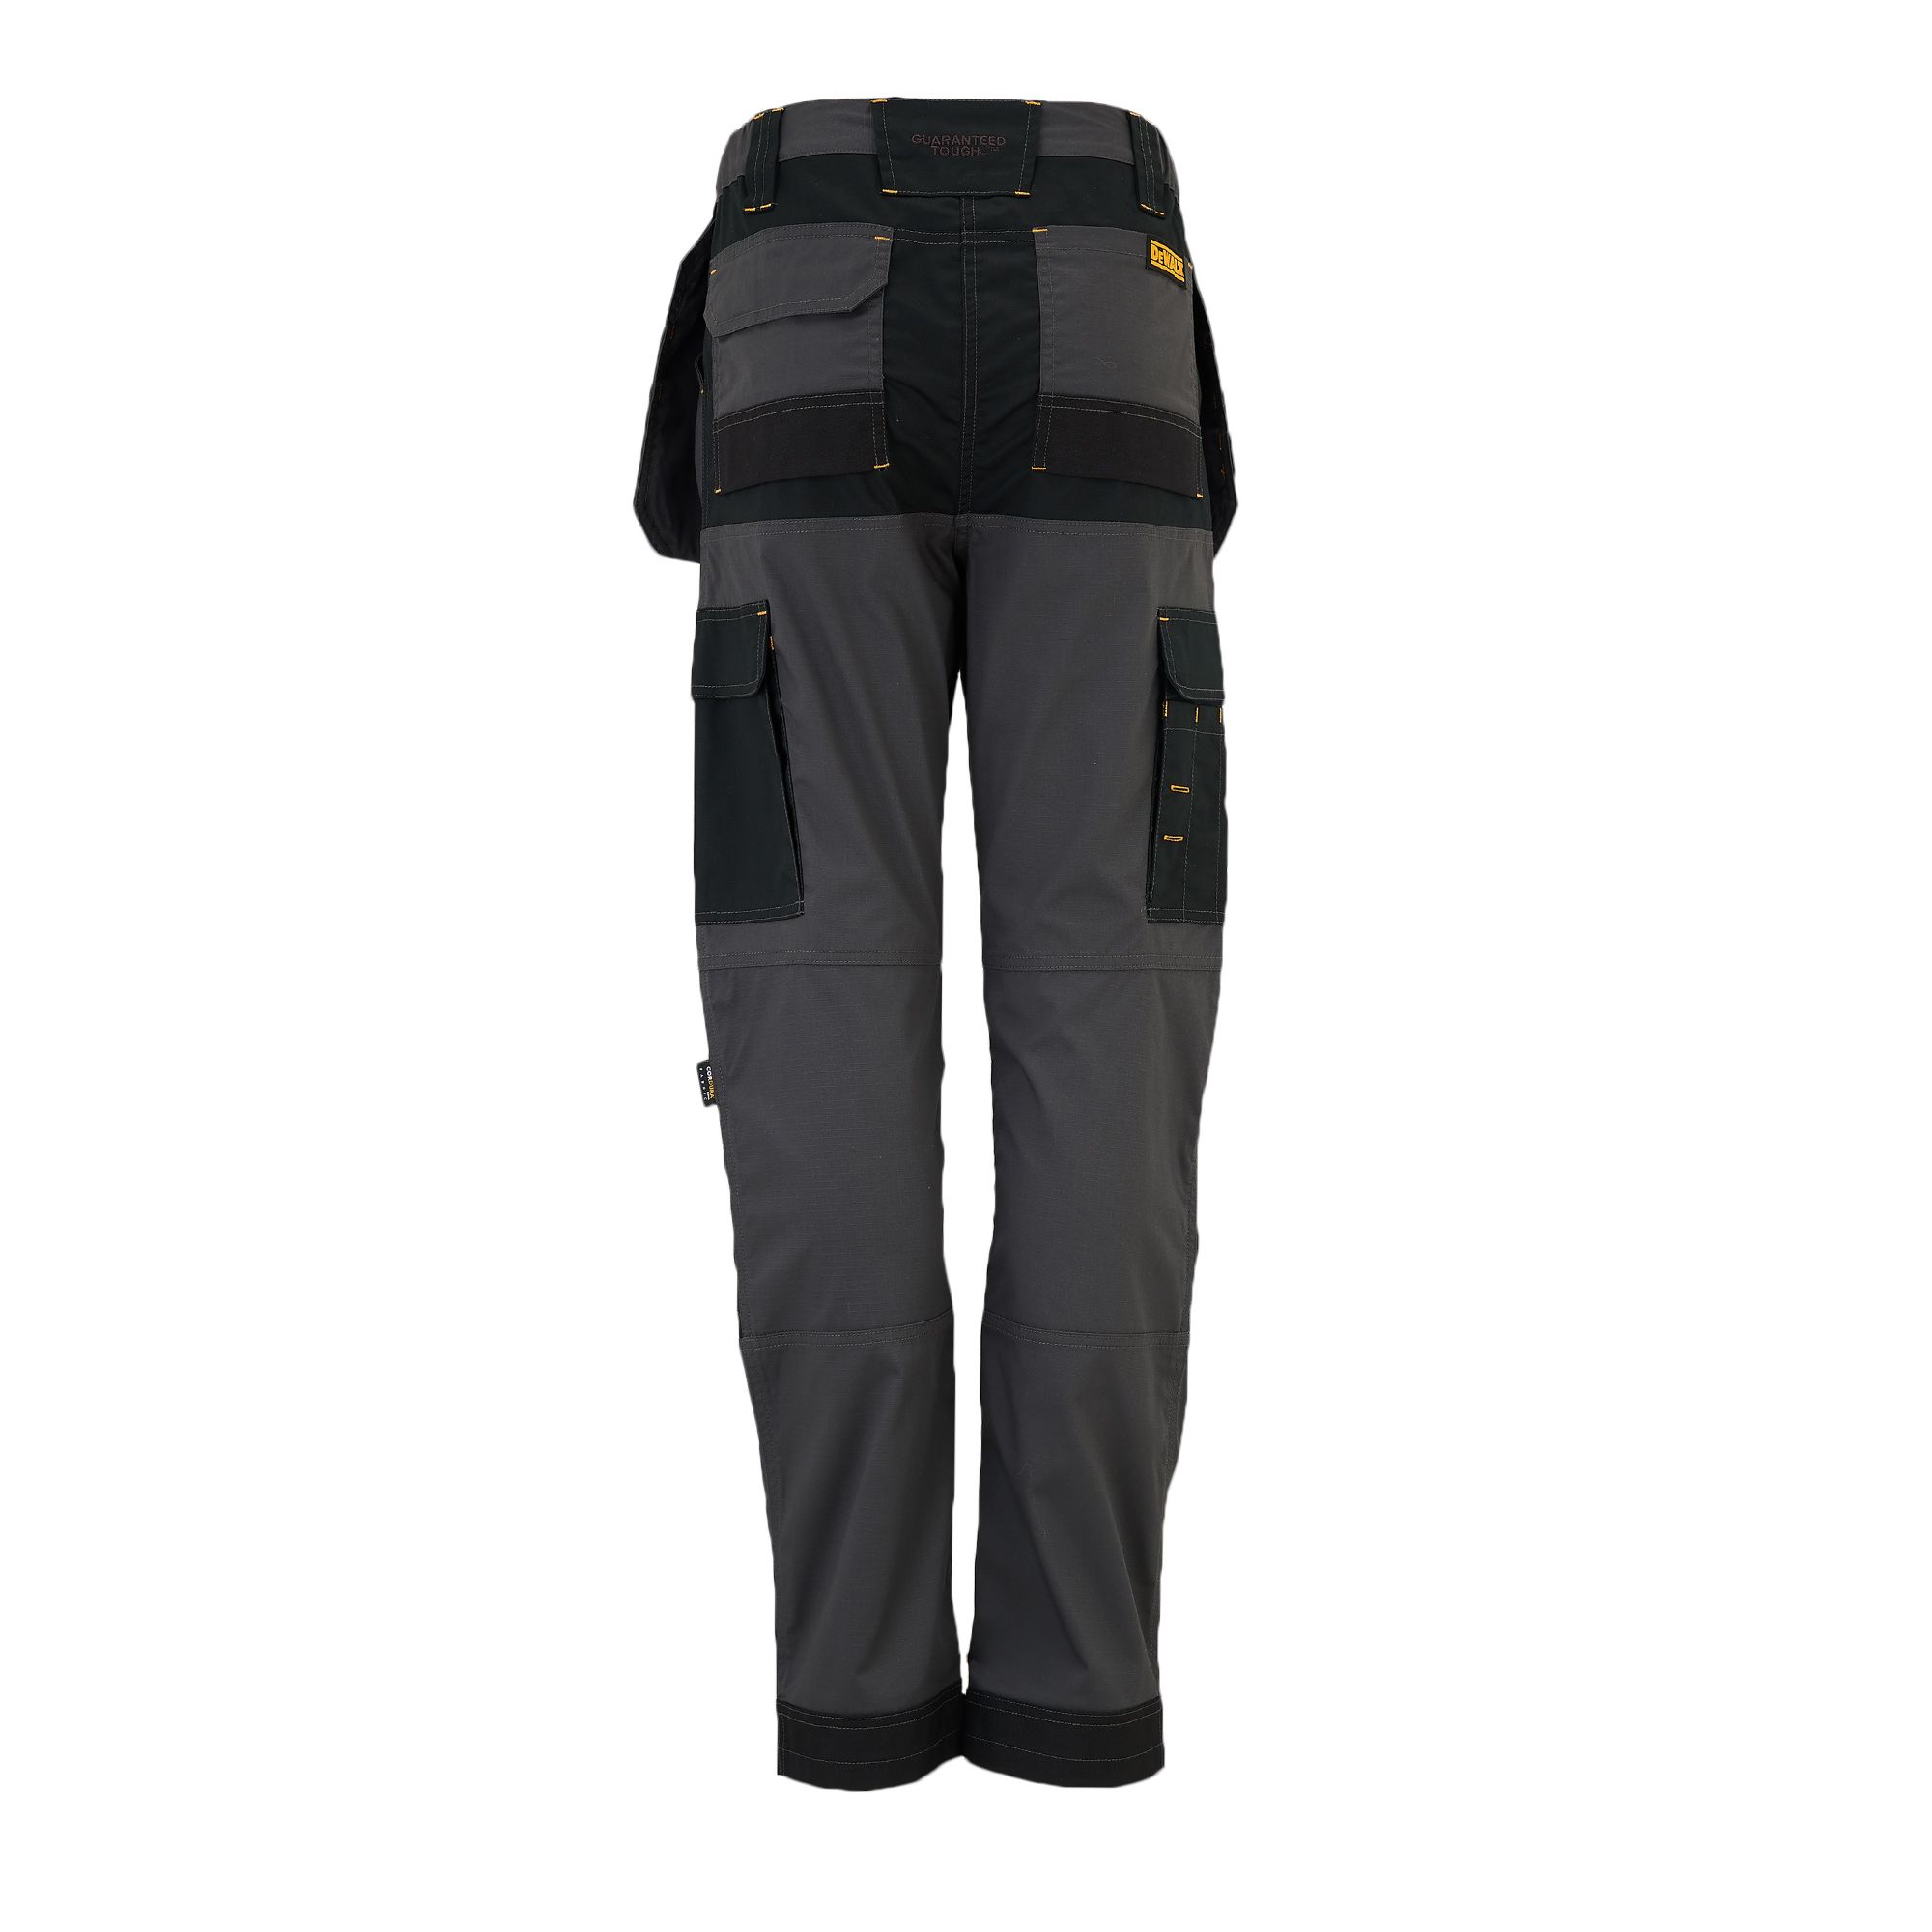 DeWalt Roseville Black & grey Women's Trousers, Size 12 L31"